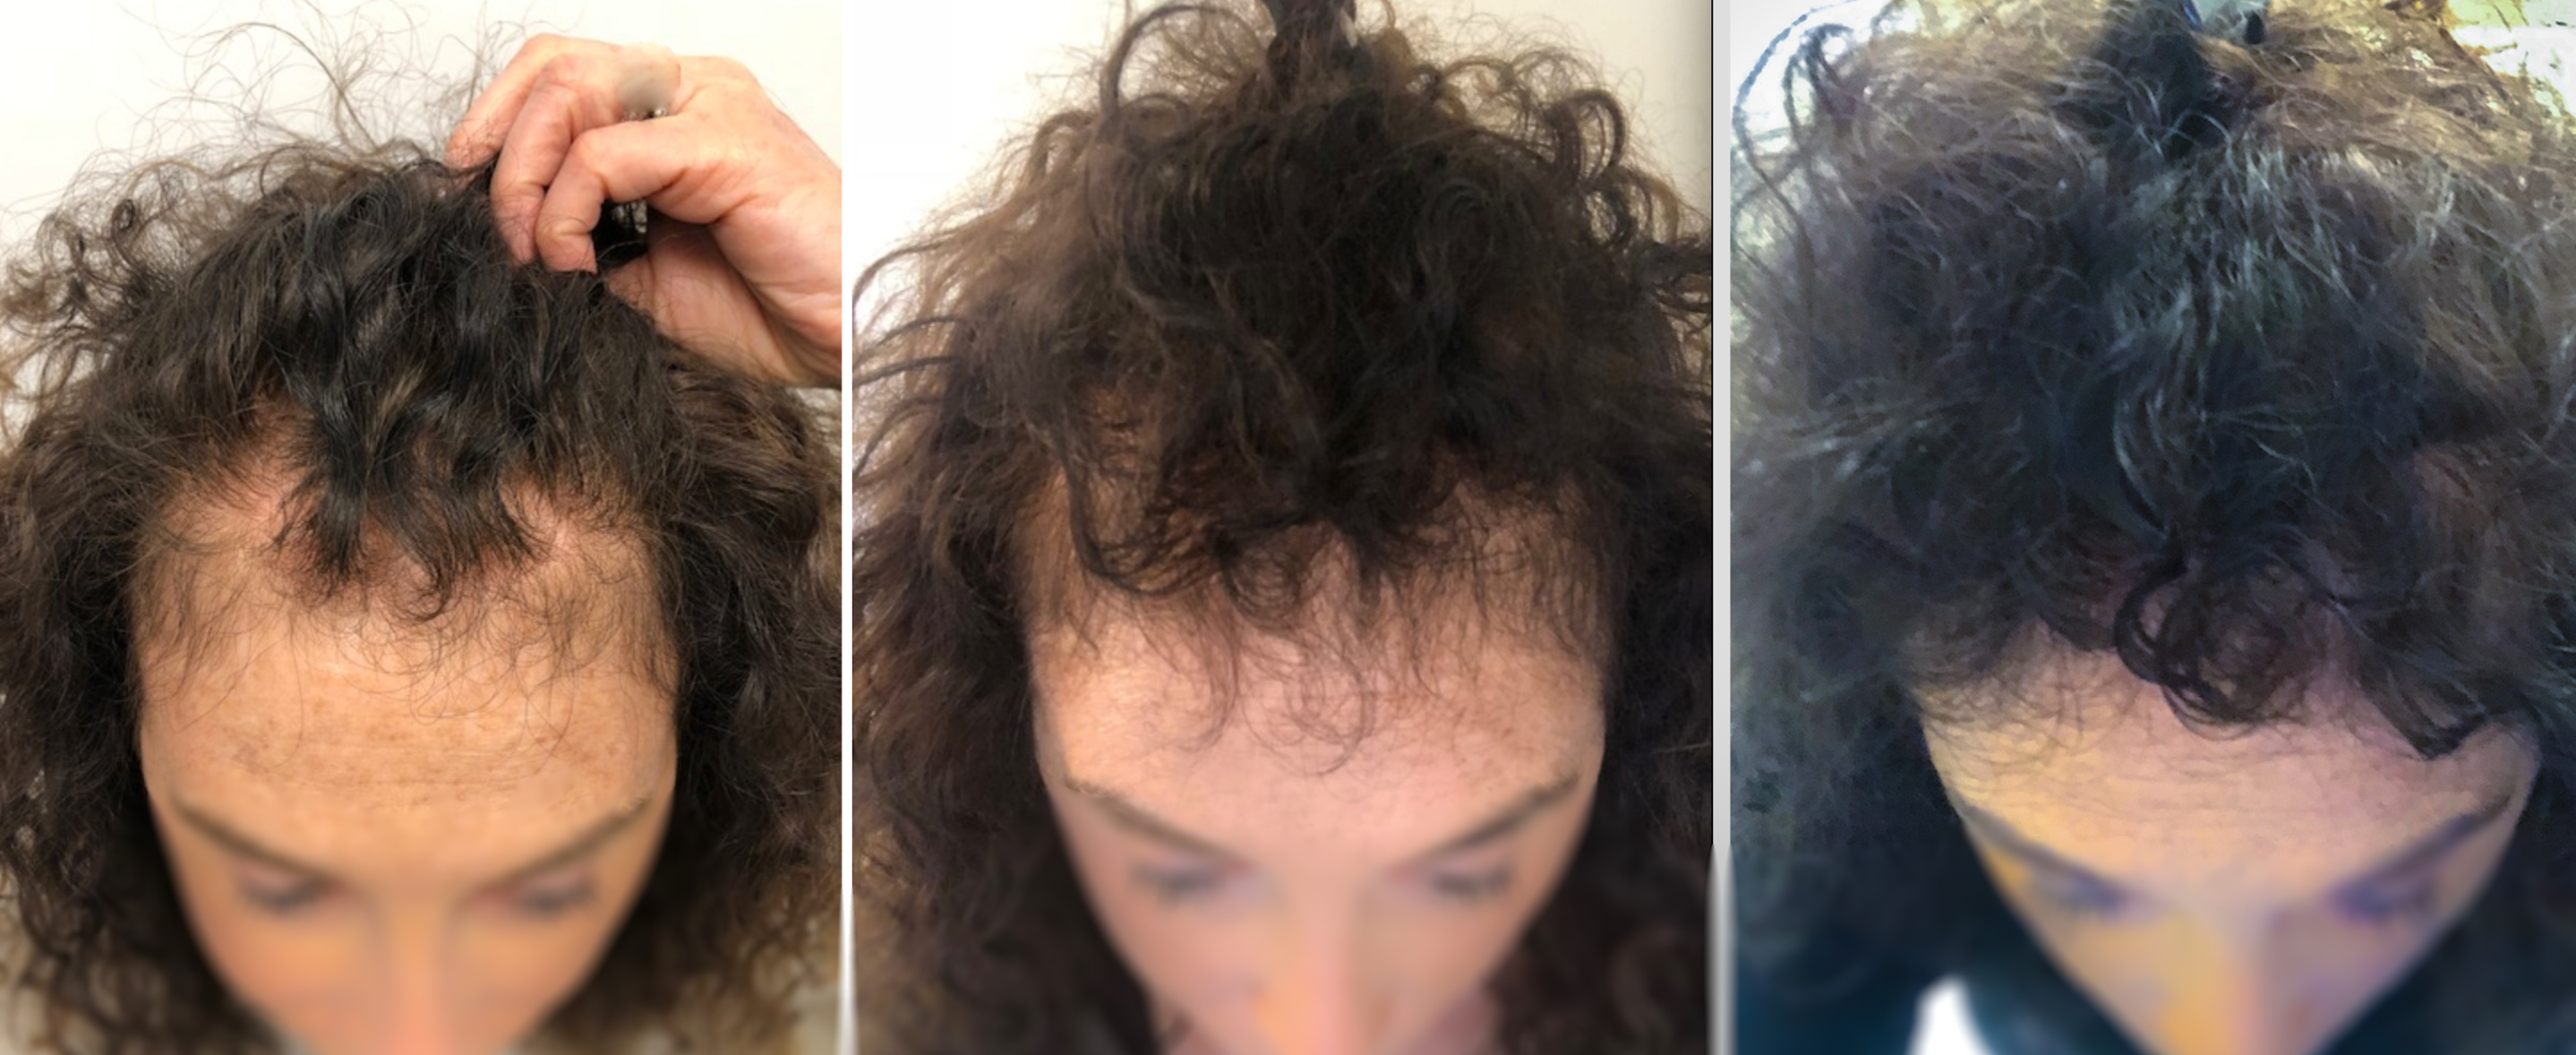 help hair shake 1-9 months